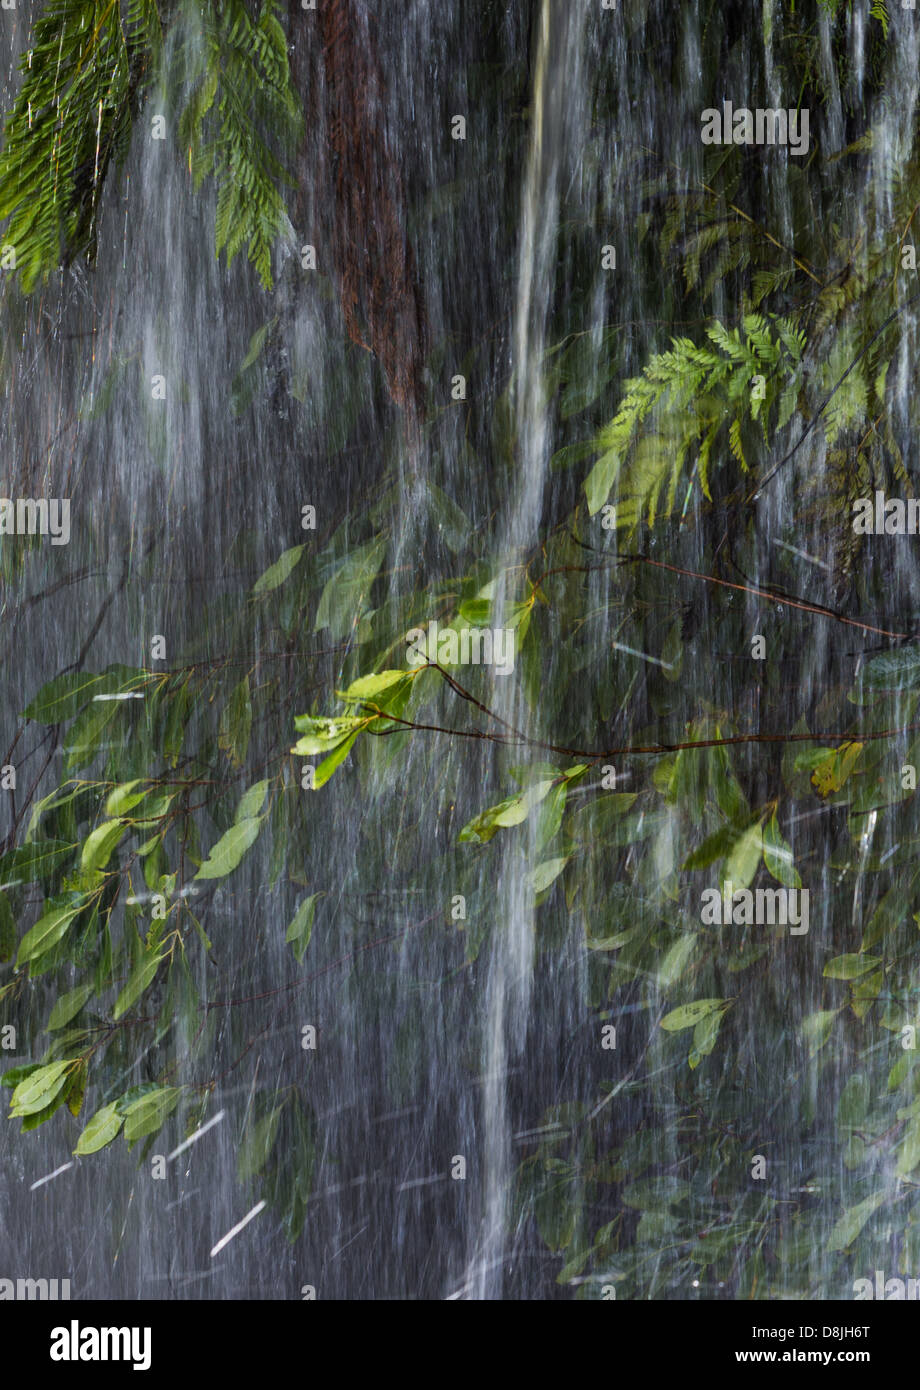 L'eau tombant en cascade d'une végétation luxuriante, Royal National Park, NSW, Australie Banque D'Images